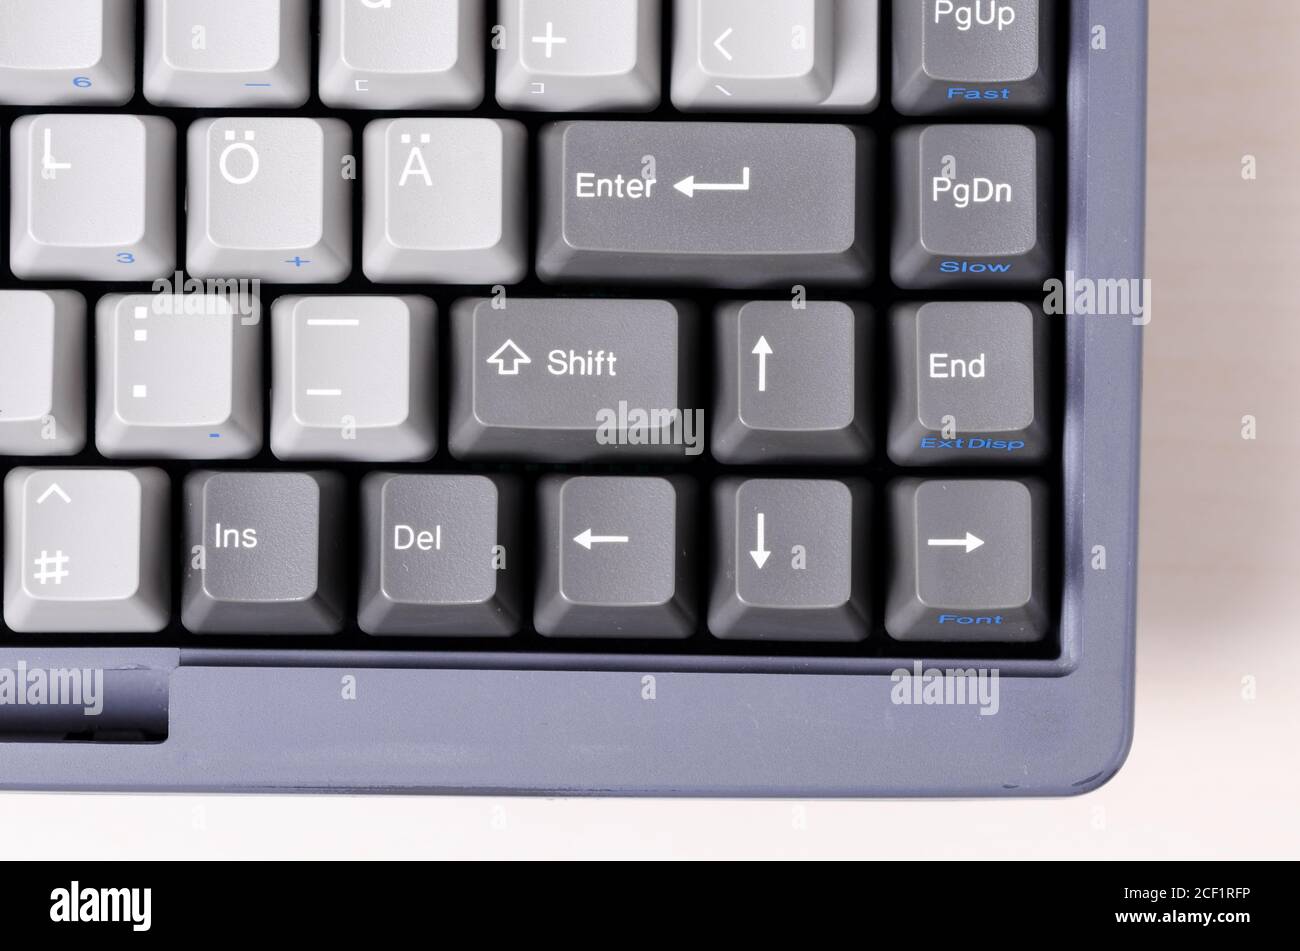 Vintage, obsolète, vieux PC ordinateur portable clavier, gros plan. Macro, gris et touches d'entrée avec symboles, flèches, studio d'intérieur Banque D'Images